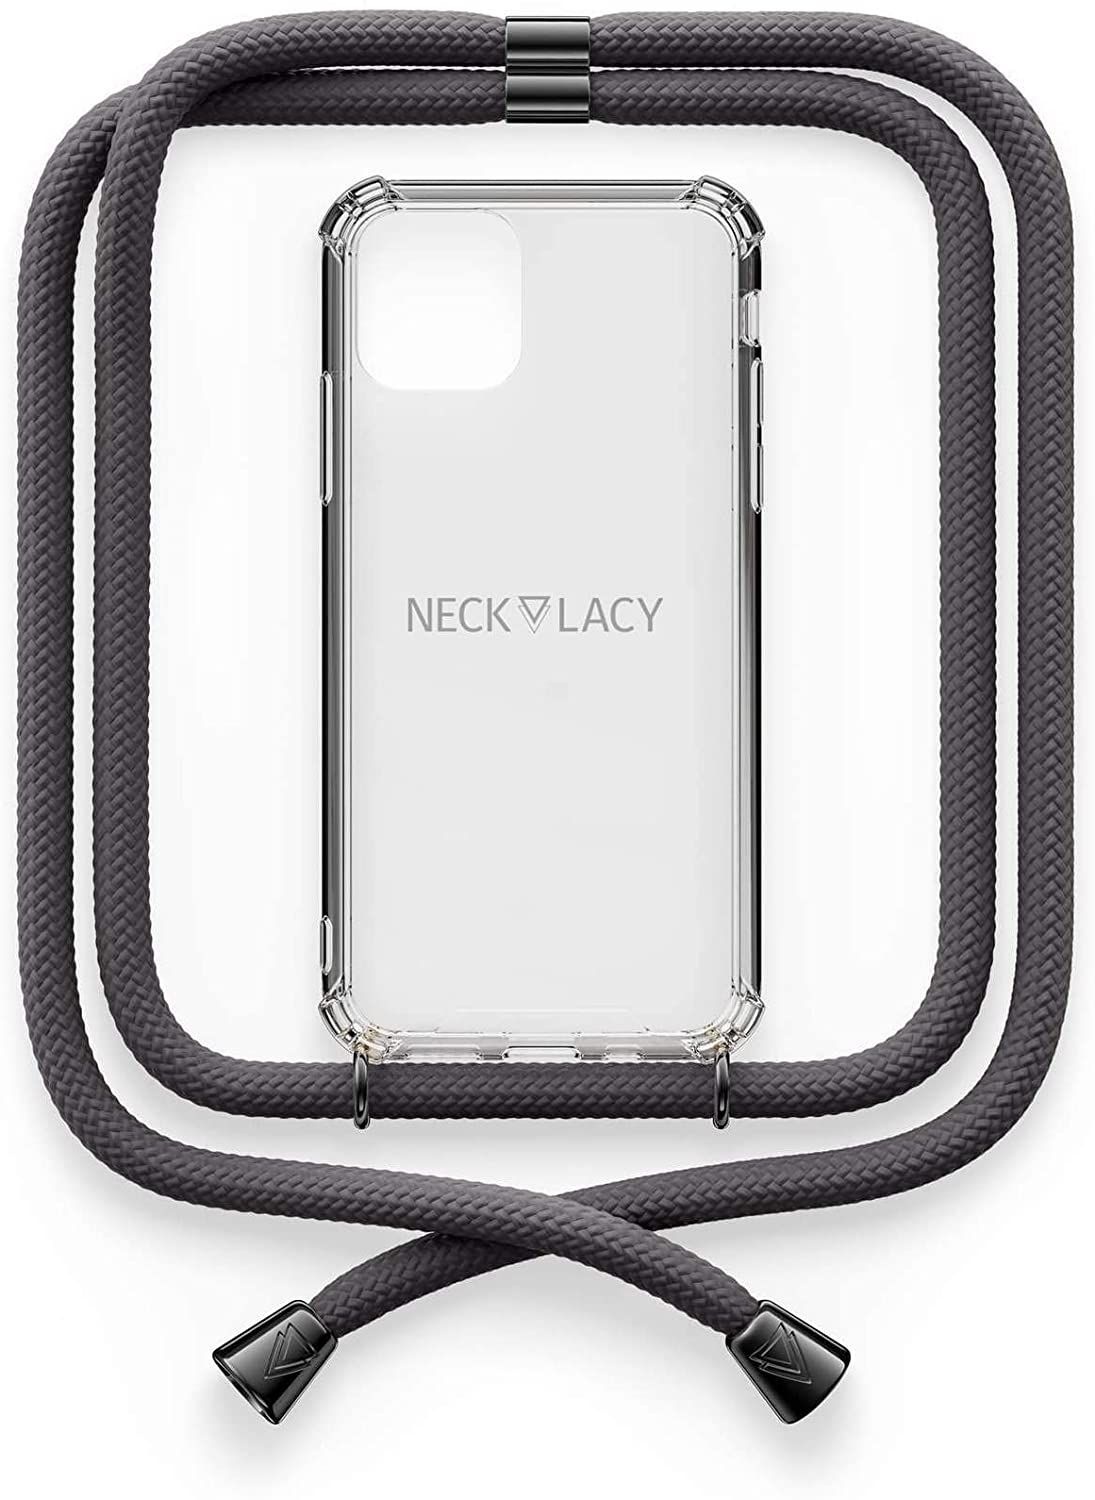 NECKLACY Handykette Handyhülle zum umhängen - für iPhone X/XS - Case / Handyhülle mit Band zum umhängen - Trageband Hals mit Kordel - Smartphone Necklace, Stormy Gray Gunmetal